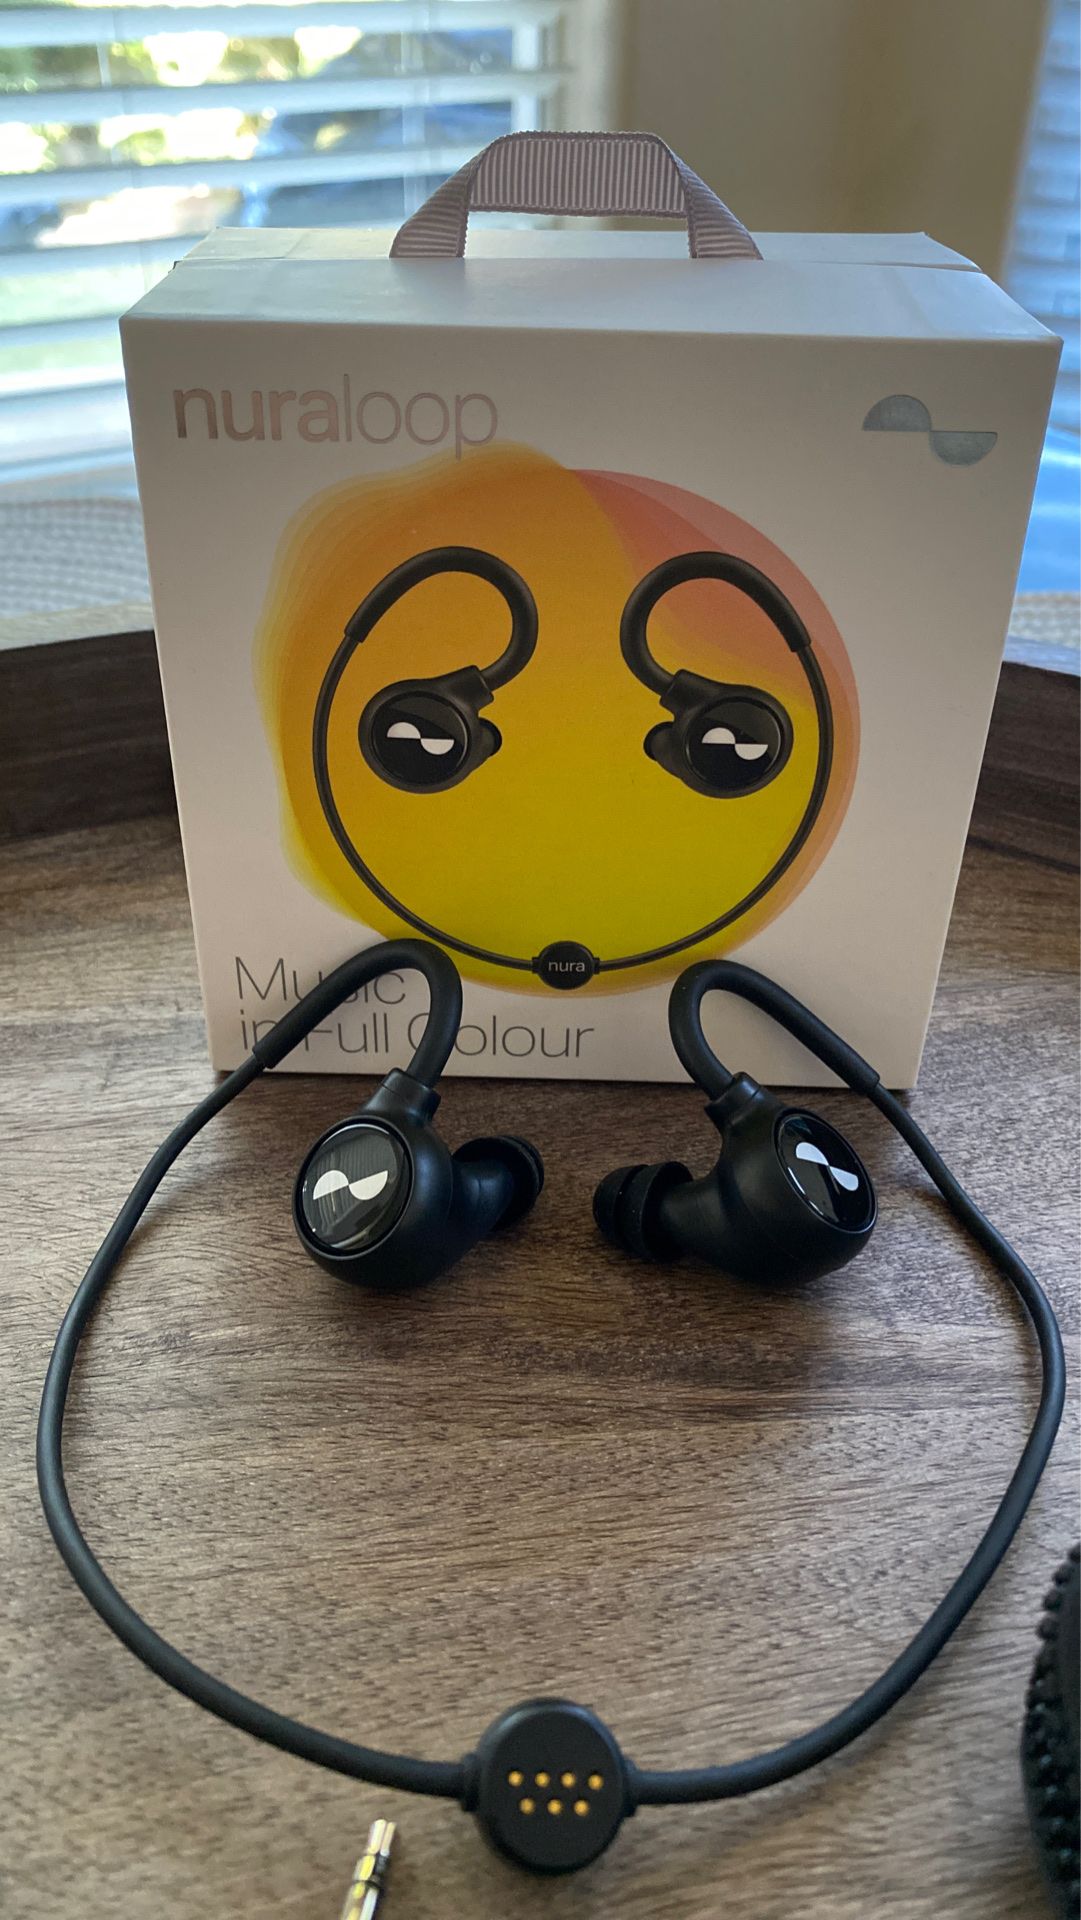 Nuraloop ANC wireless earbuds